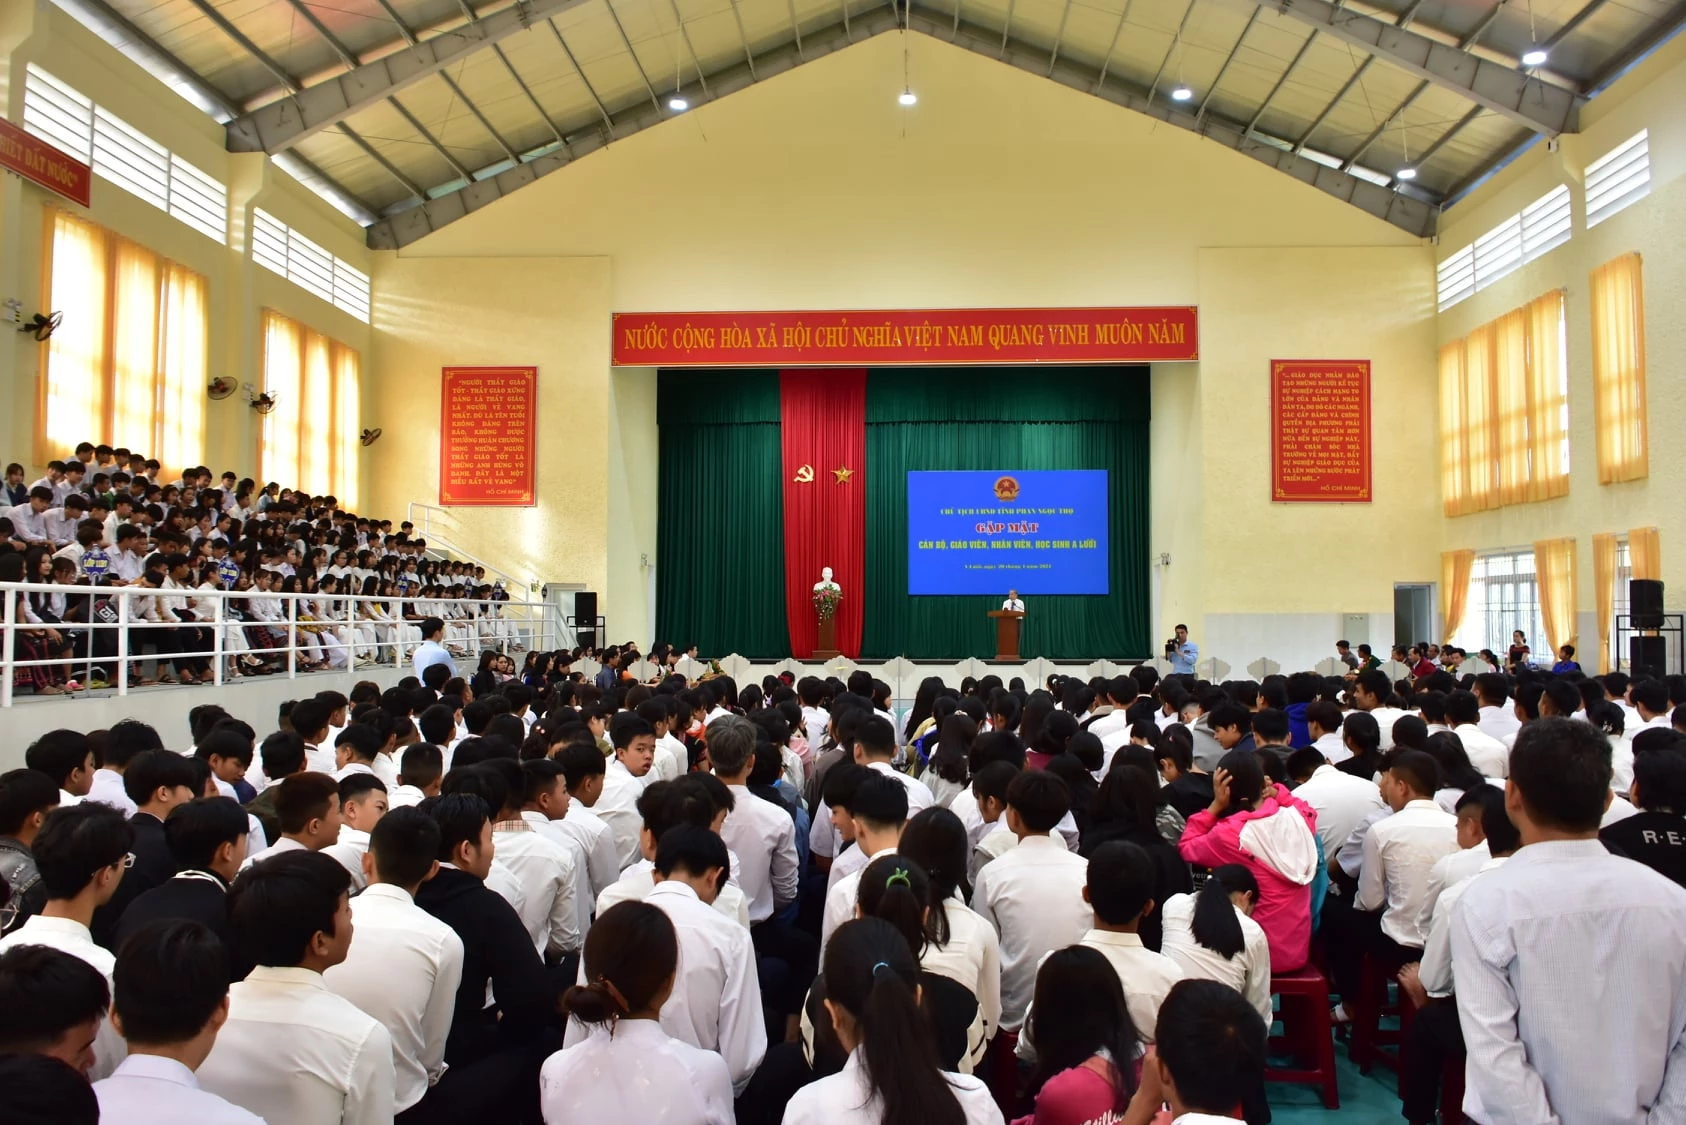 Hơn 800 học sinh, giáo viên Trường THPT A Lưới và những người làm công tác giáo dục huyện A Lưới tham gia buổi nói chuyện.